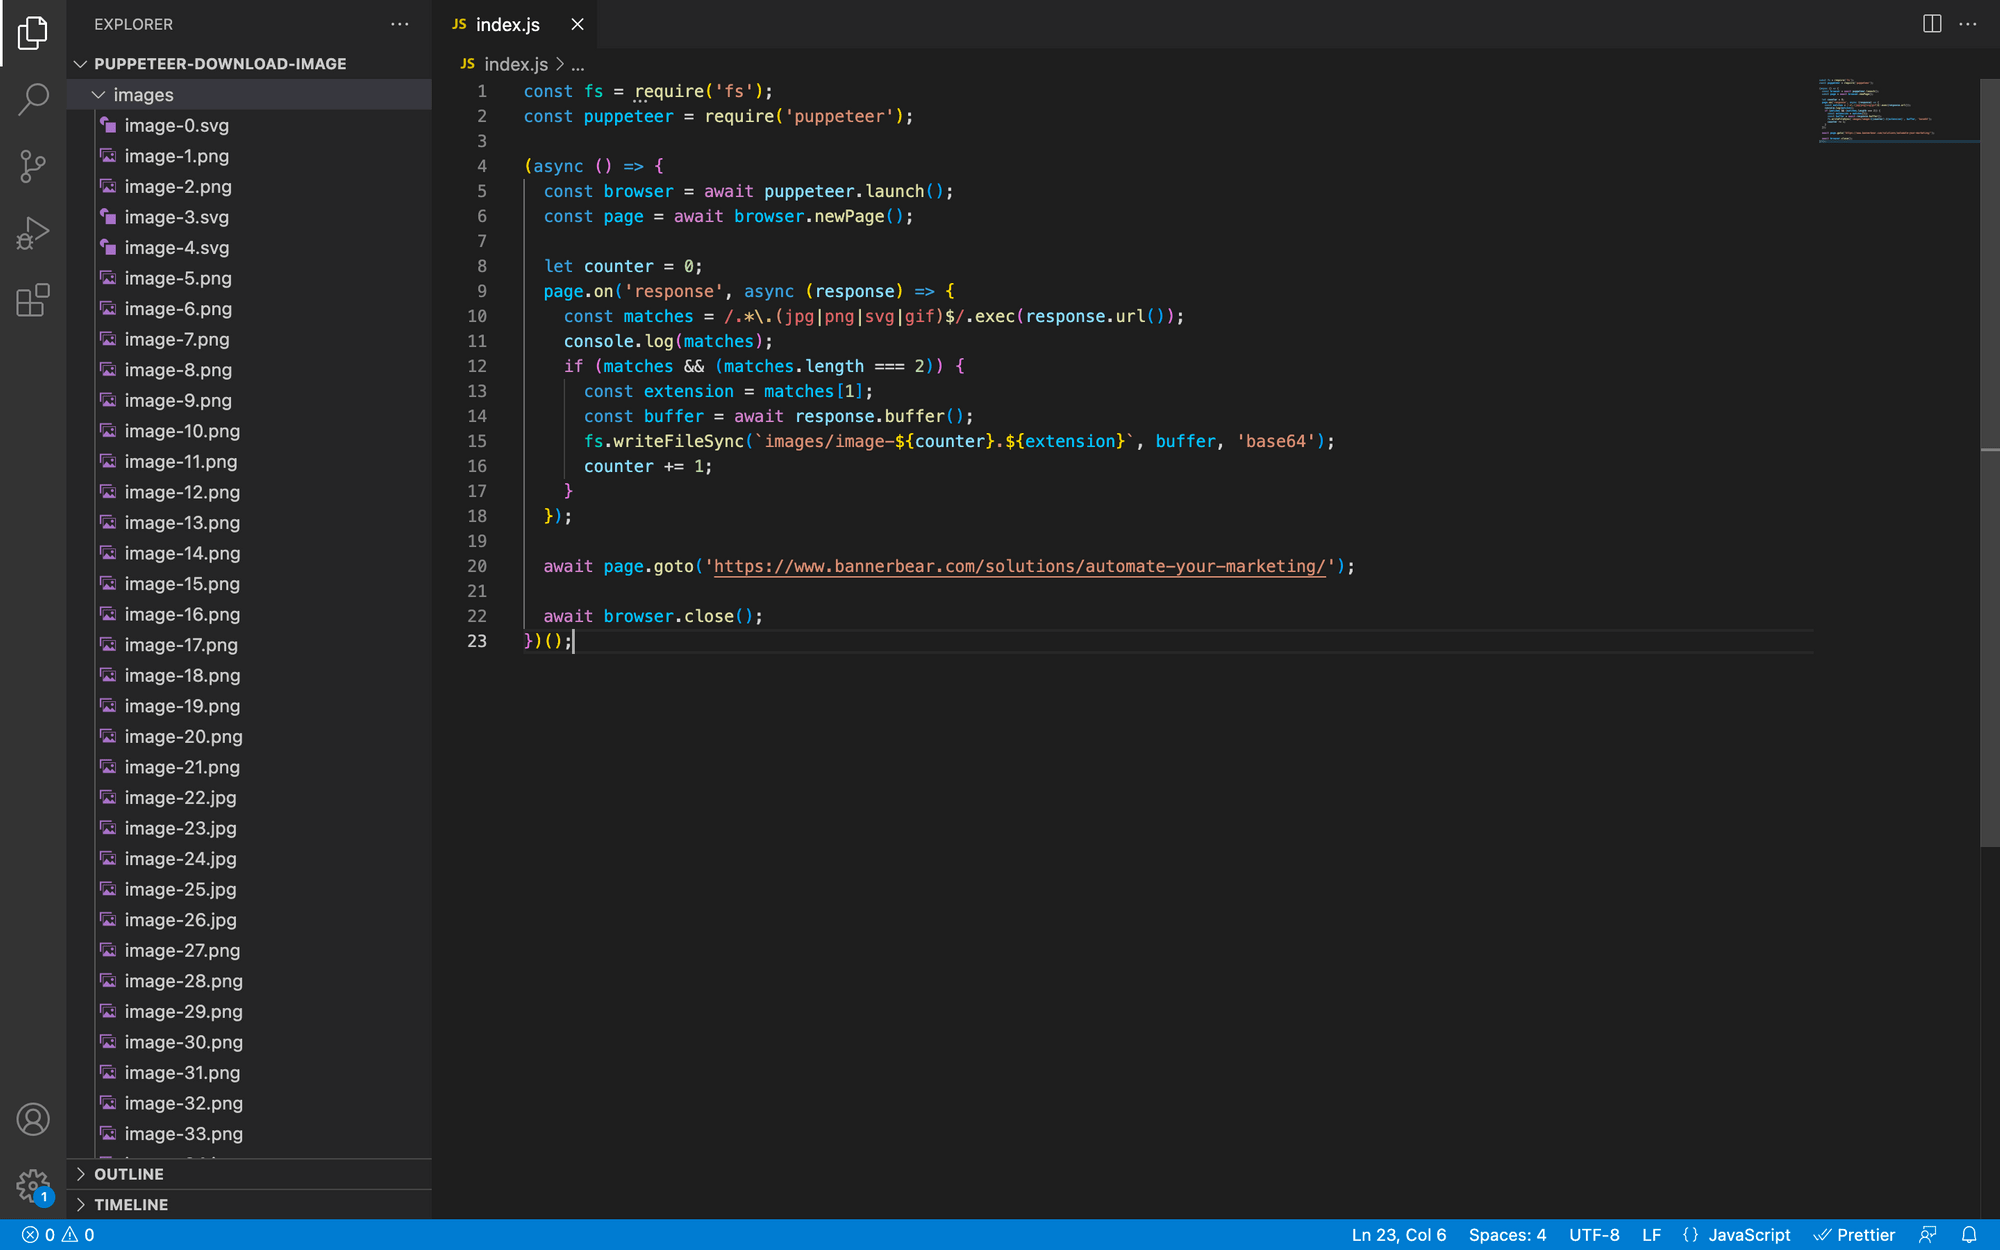 screenshot of code in index.js